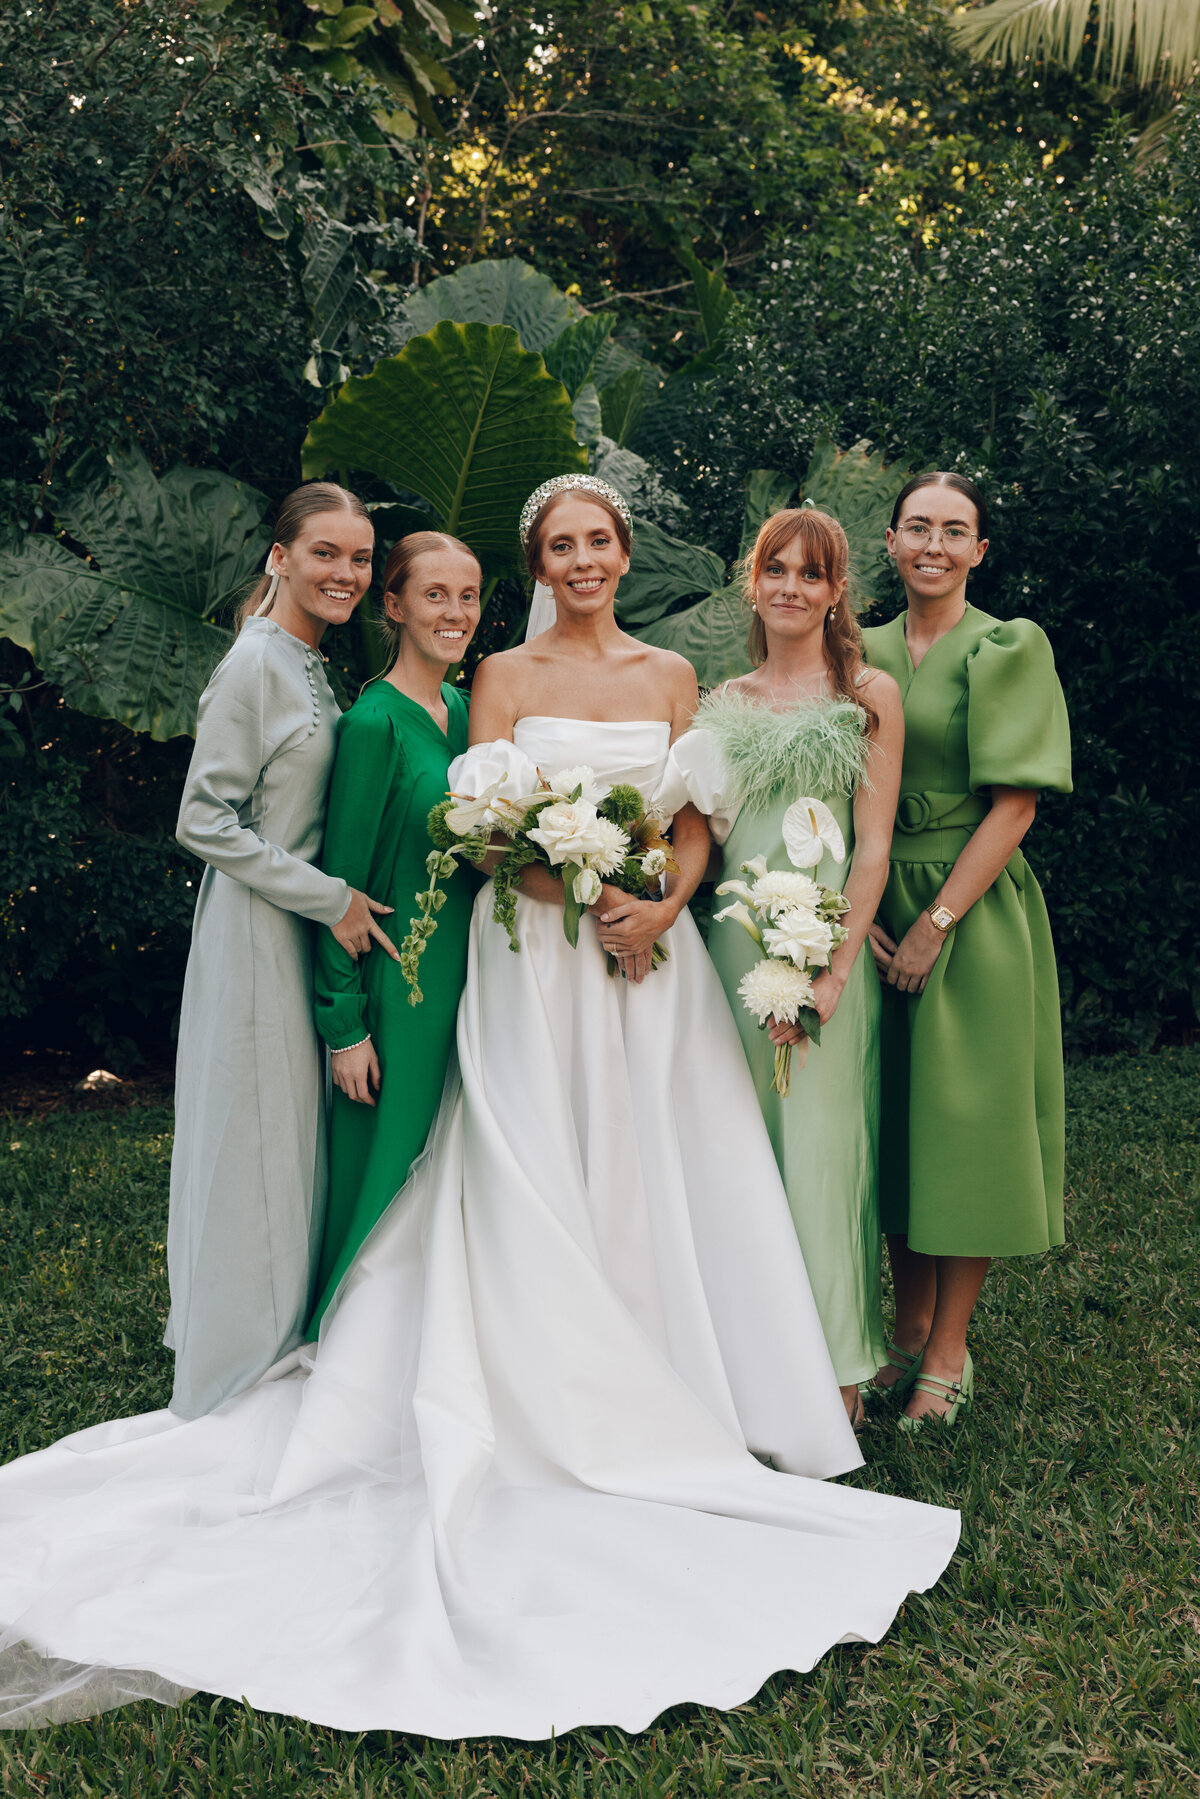 fairchild-botanical-garden-anti-bride-wedding-miami-florida-63